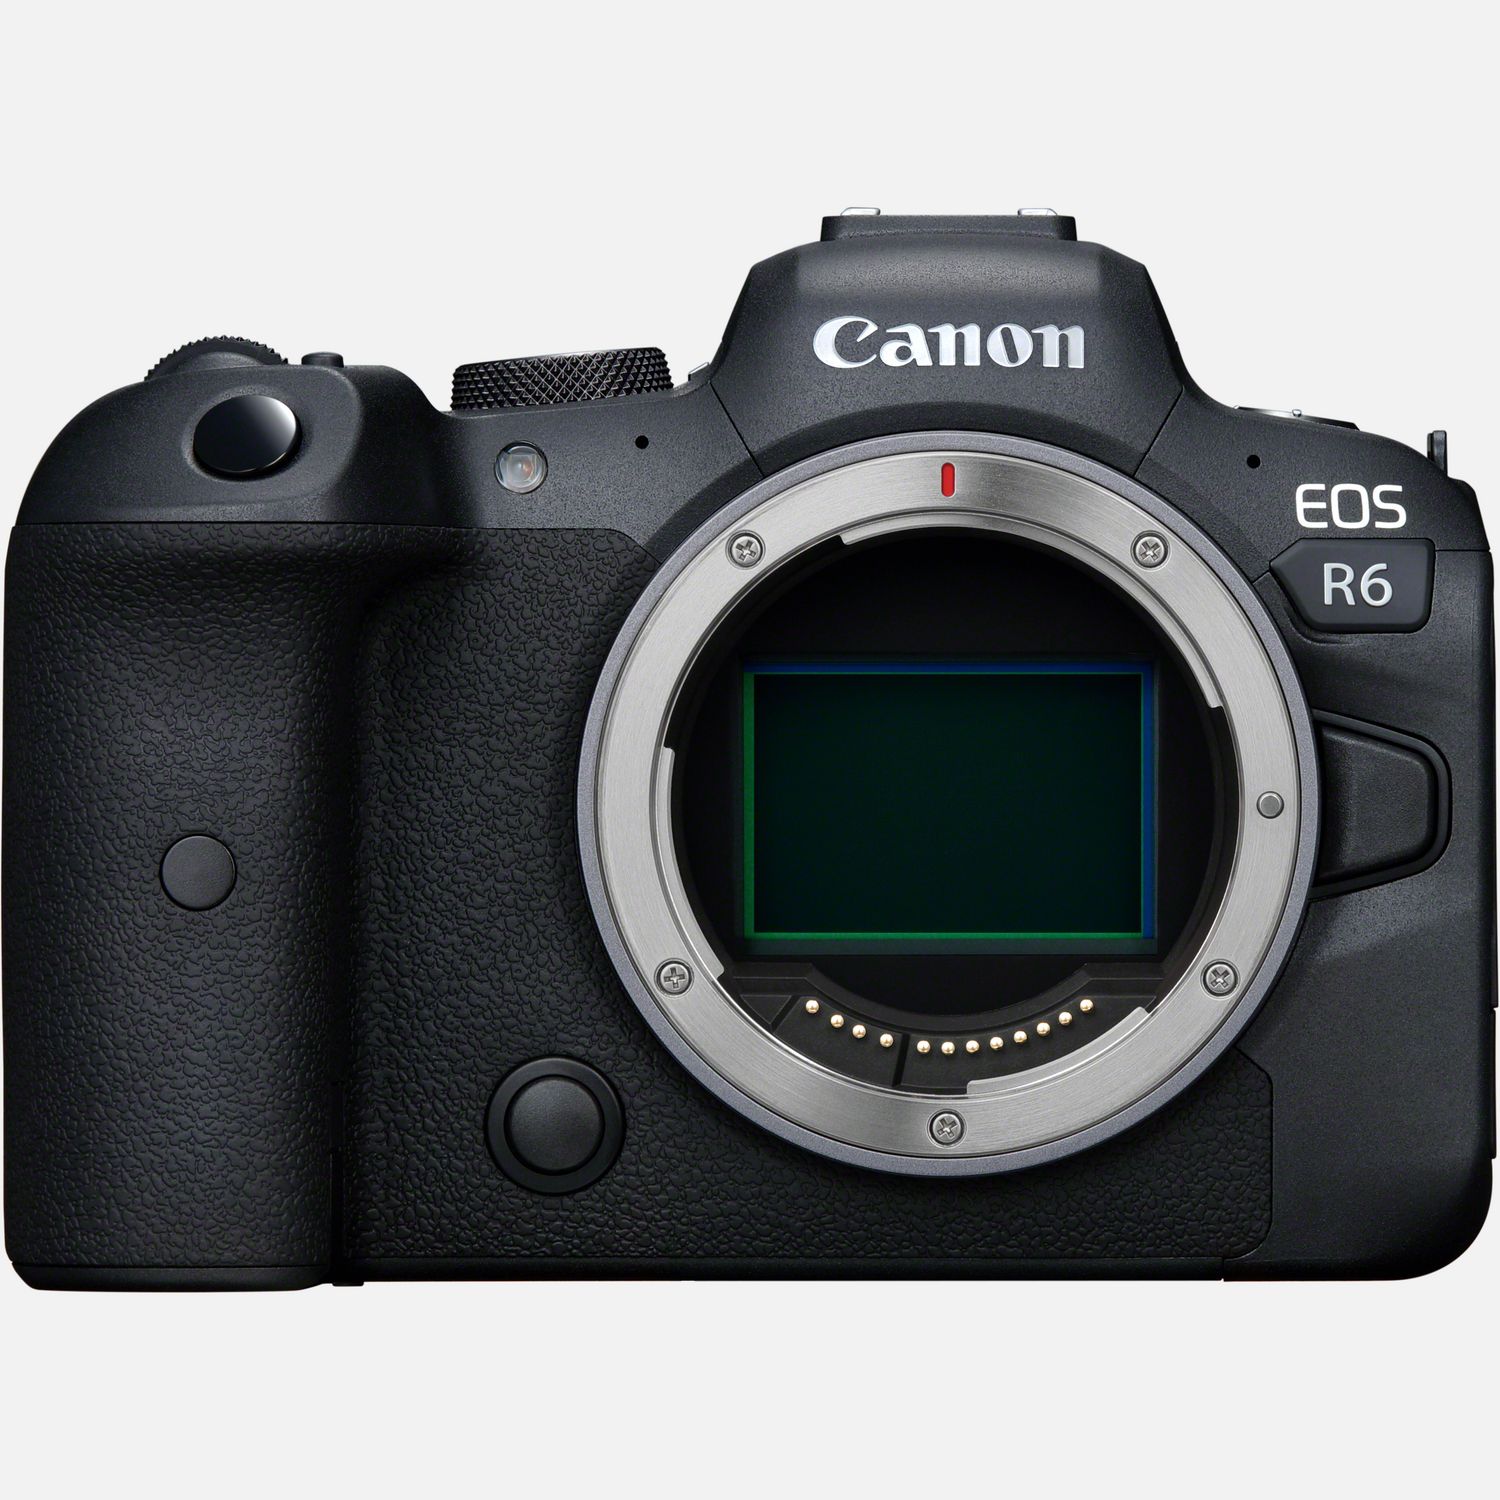 Comprar Cuerpo de la cámara mirrorless EOS R6 de Canon en Cámaras con Wi-Fi — Tienda Canon